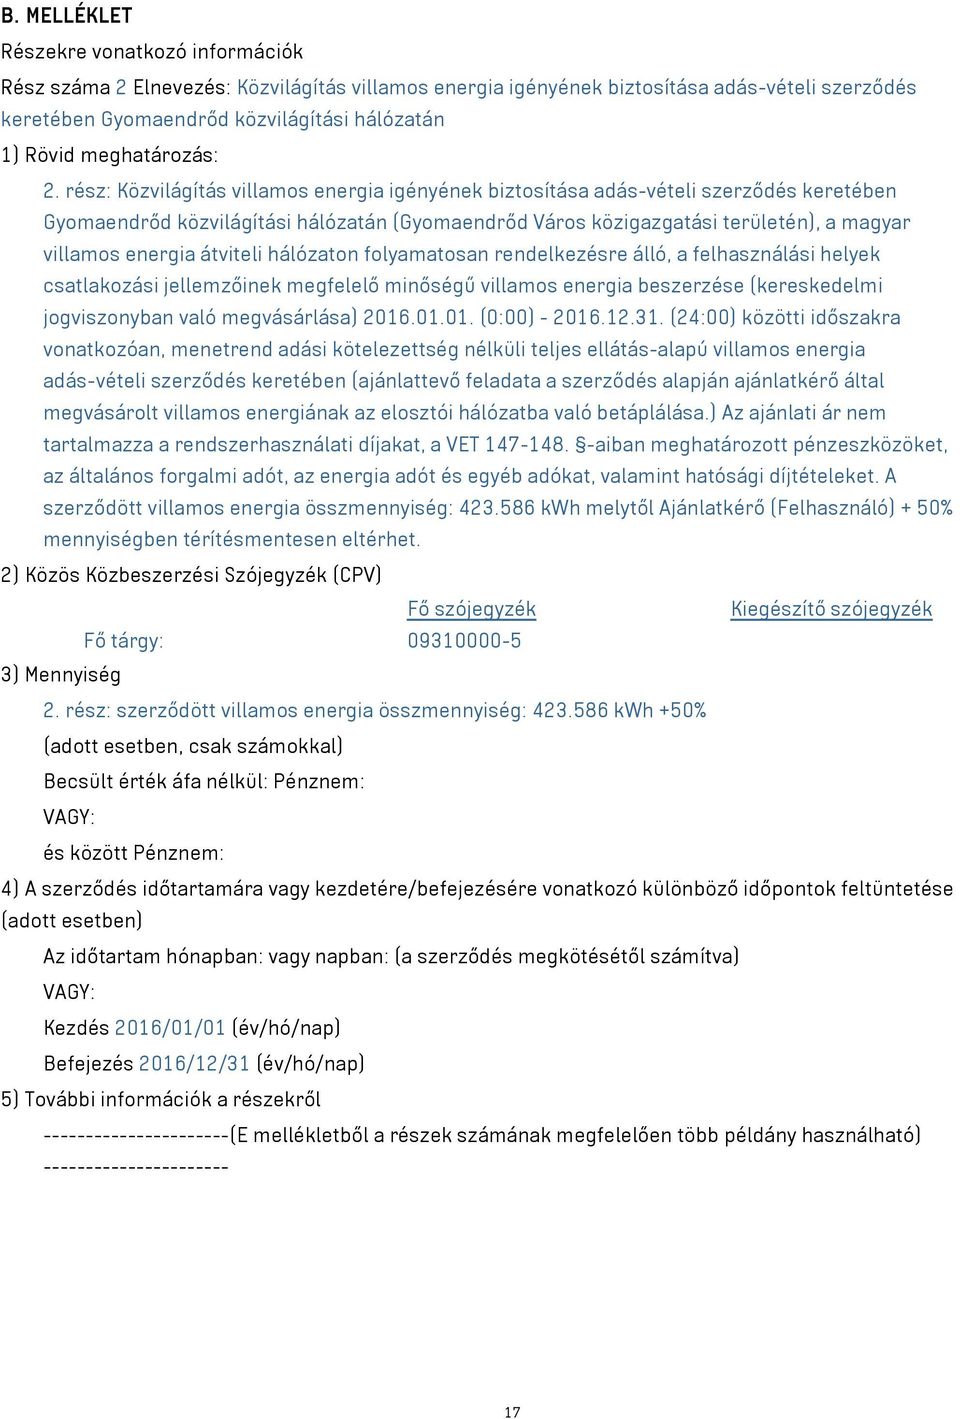 rész: Közvilágítás villamos energia igényének biztosítása adás-vételi szerződés keretében Gyomaendrőd közvilágítási hálózatán (Gyomaendrőd Város közigazgatási területén), a magyar villamos energia